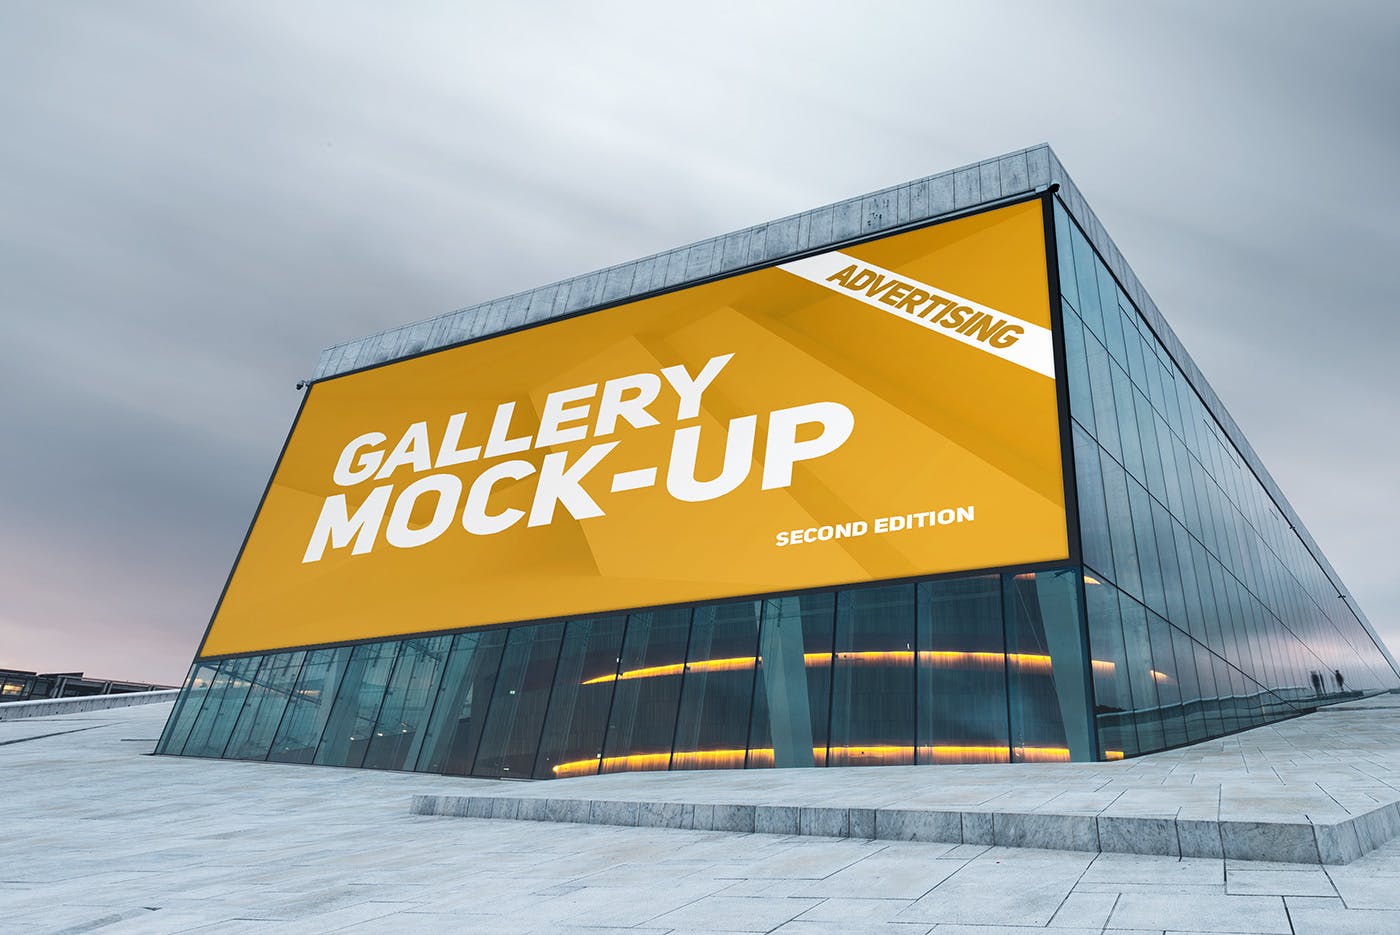 展厅画廊巨幅海报设计图样机16图库精选模板v3 Gallery Poster Mockup v.3插图(10)